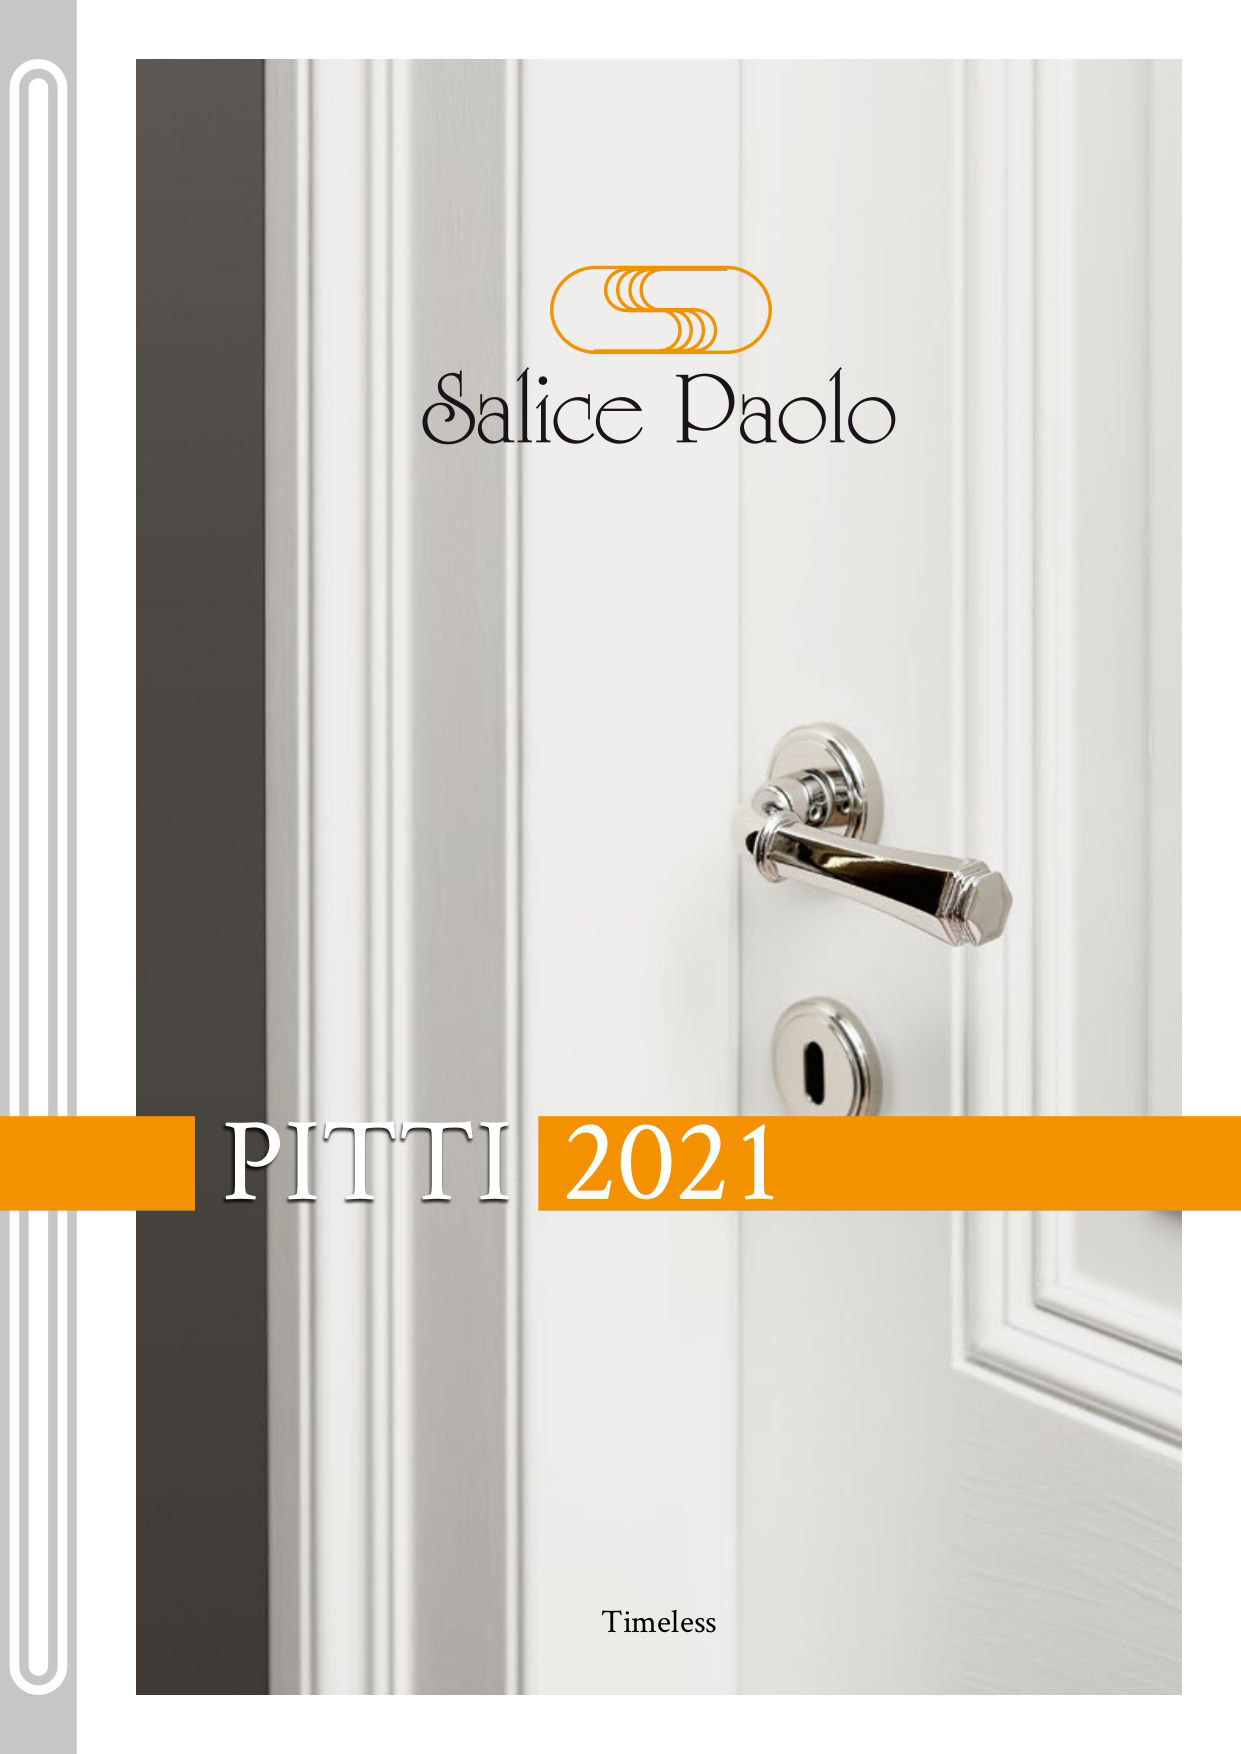 Salice Paolo PITTI 2021